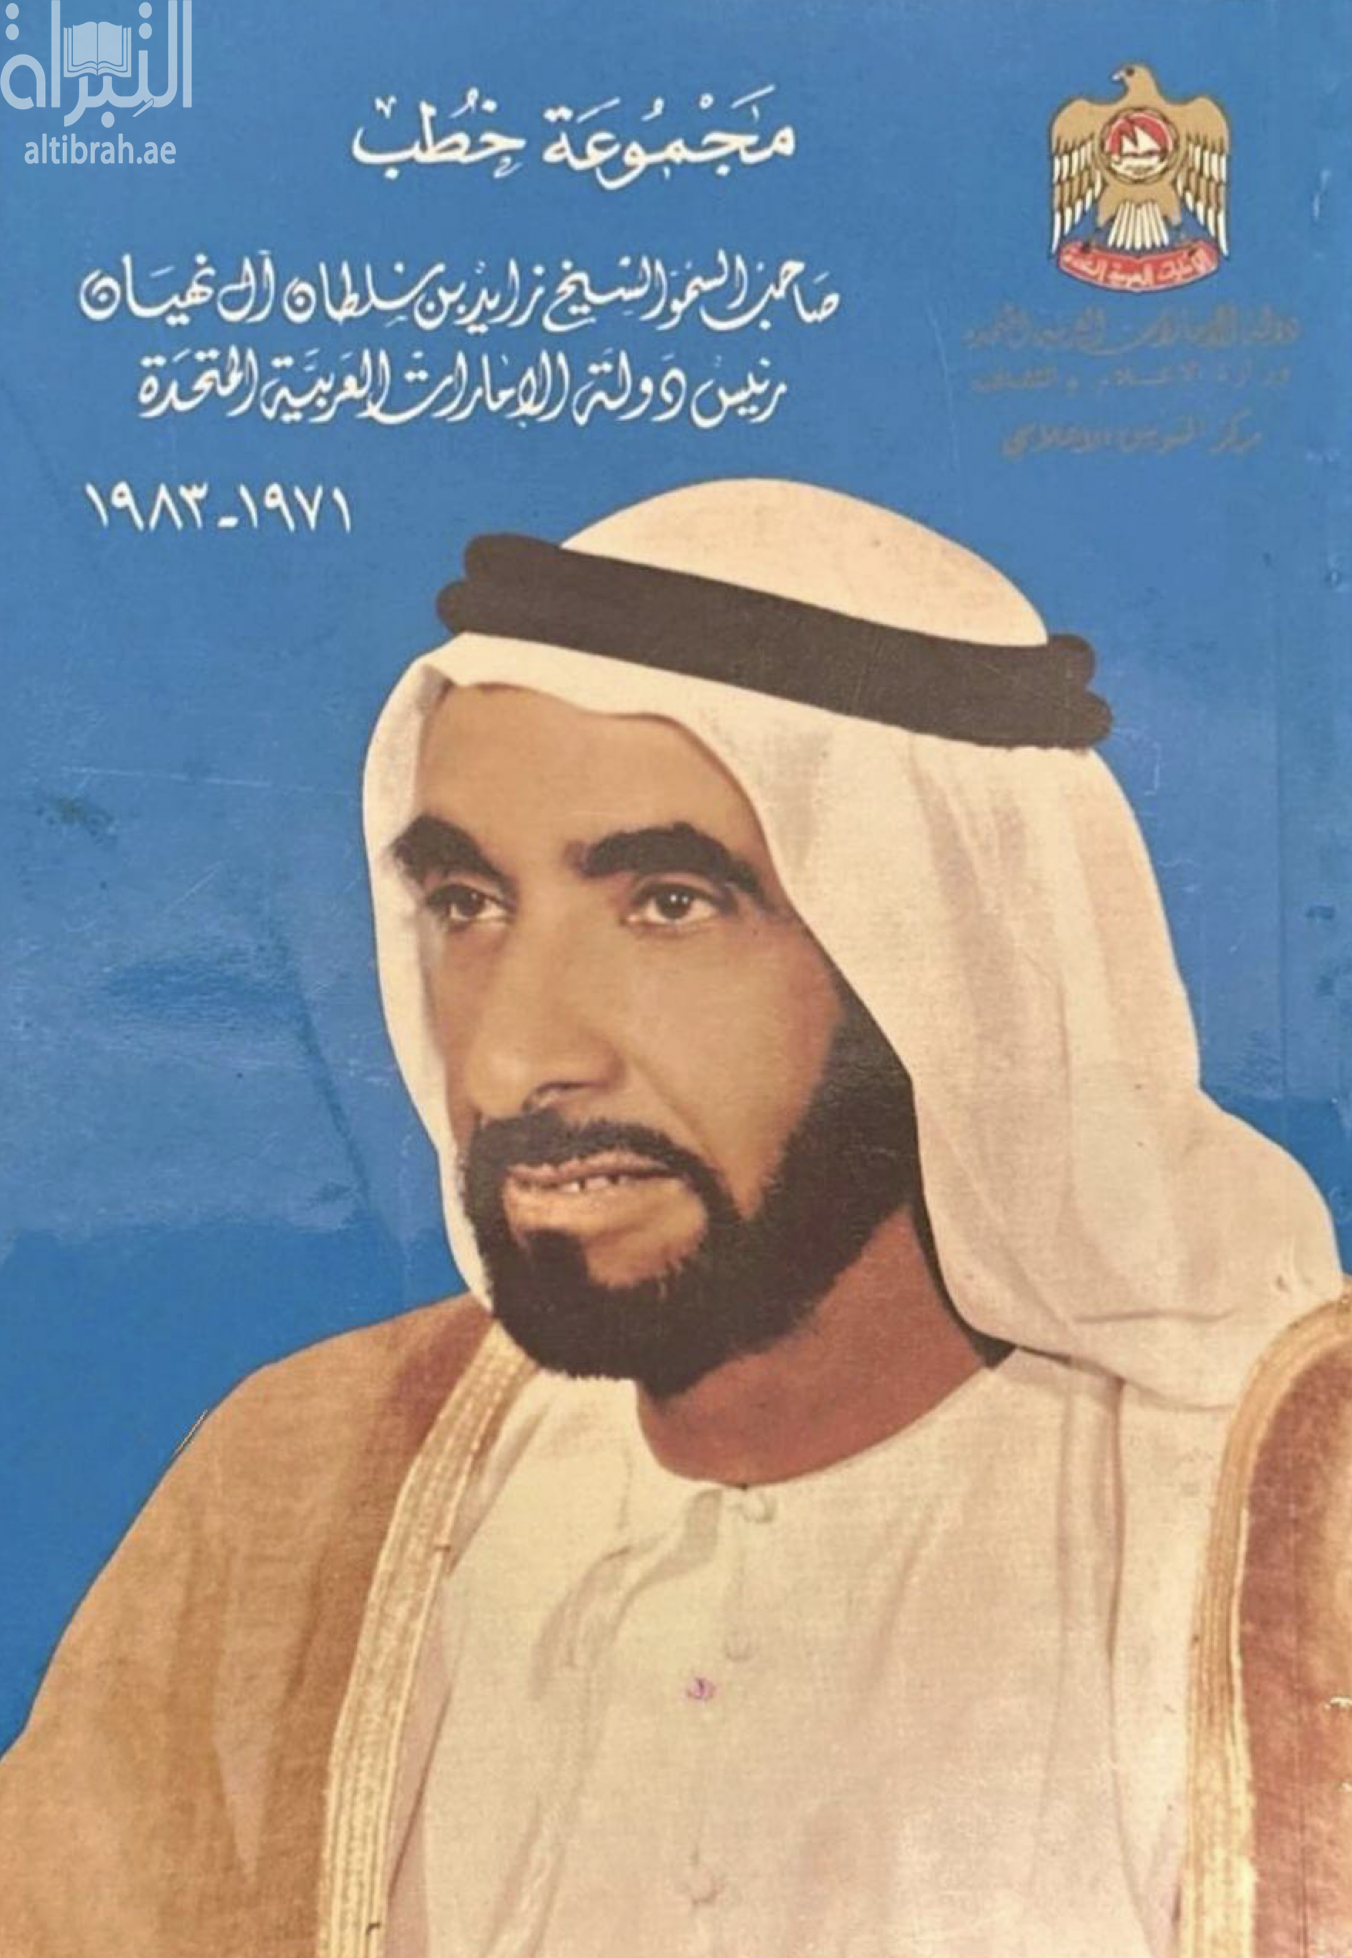 مجموعة خطب صاحب السمو الشيخ زايد بن سلطان آل نهيان رئيس دولة الإمارات العربية المتحدة 1971 - 1983 م